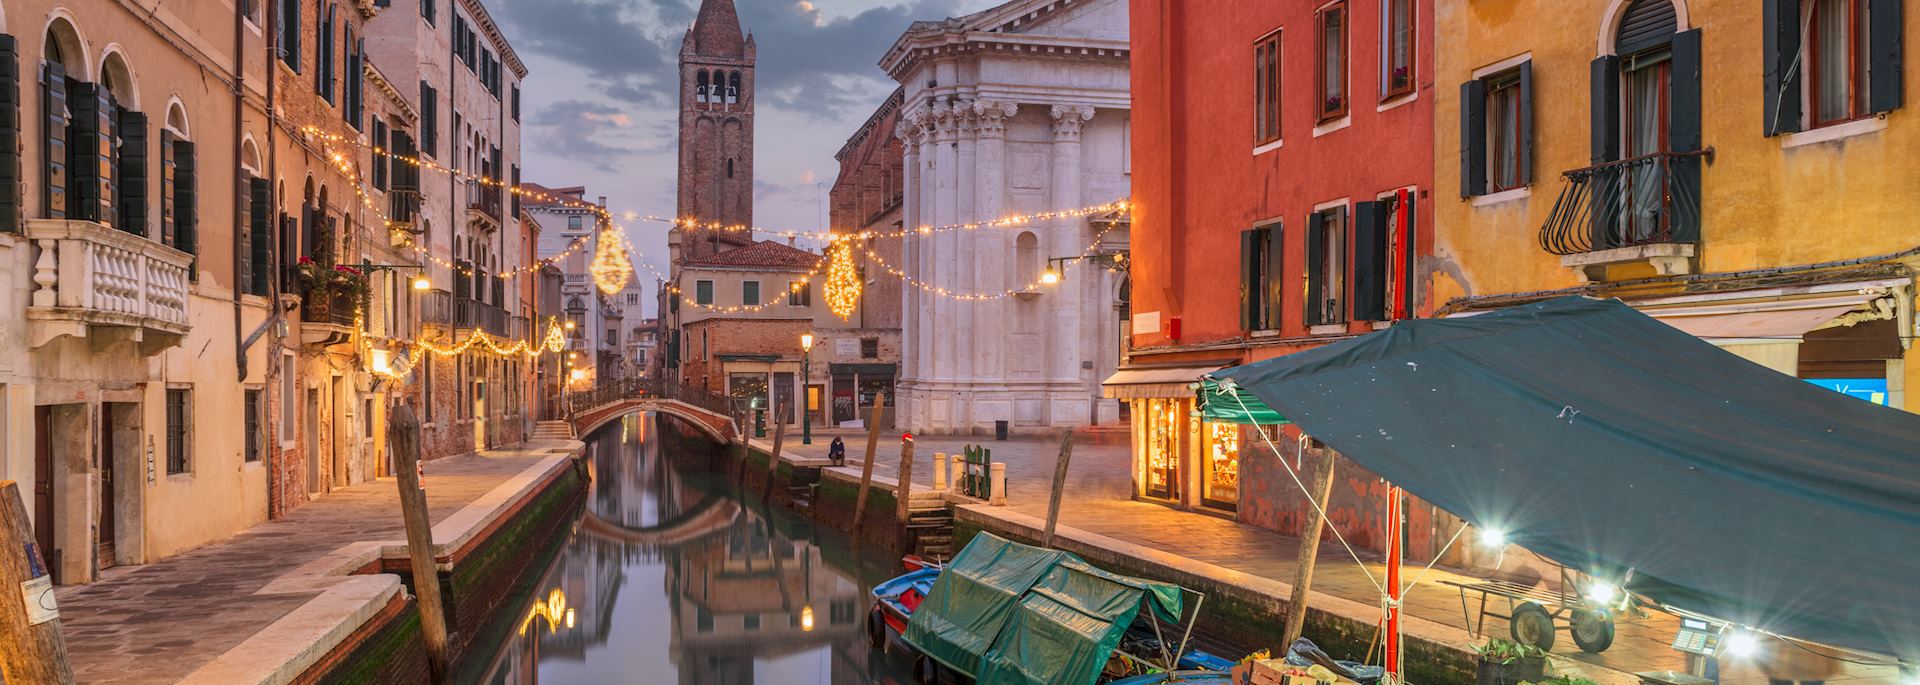 Venice canal at dusk